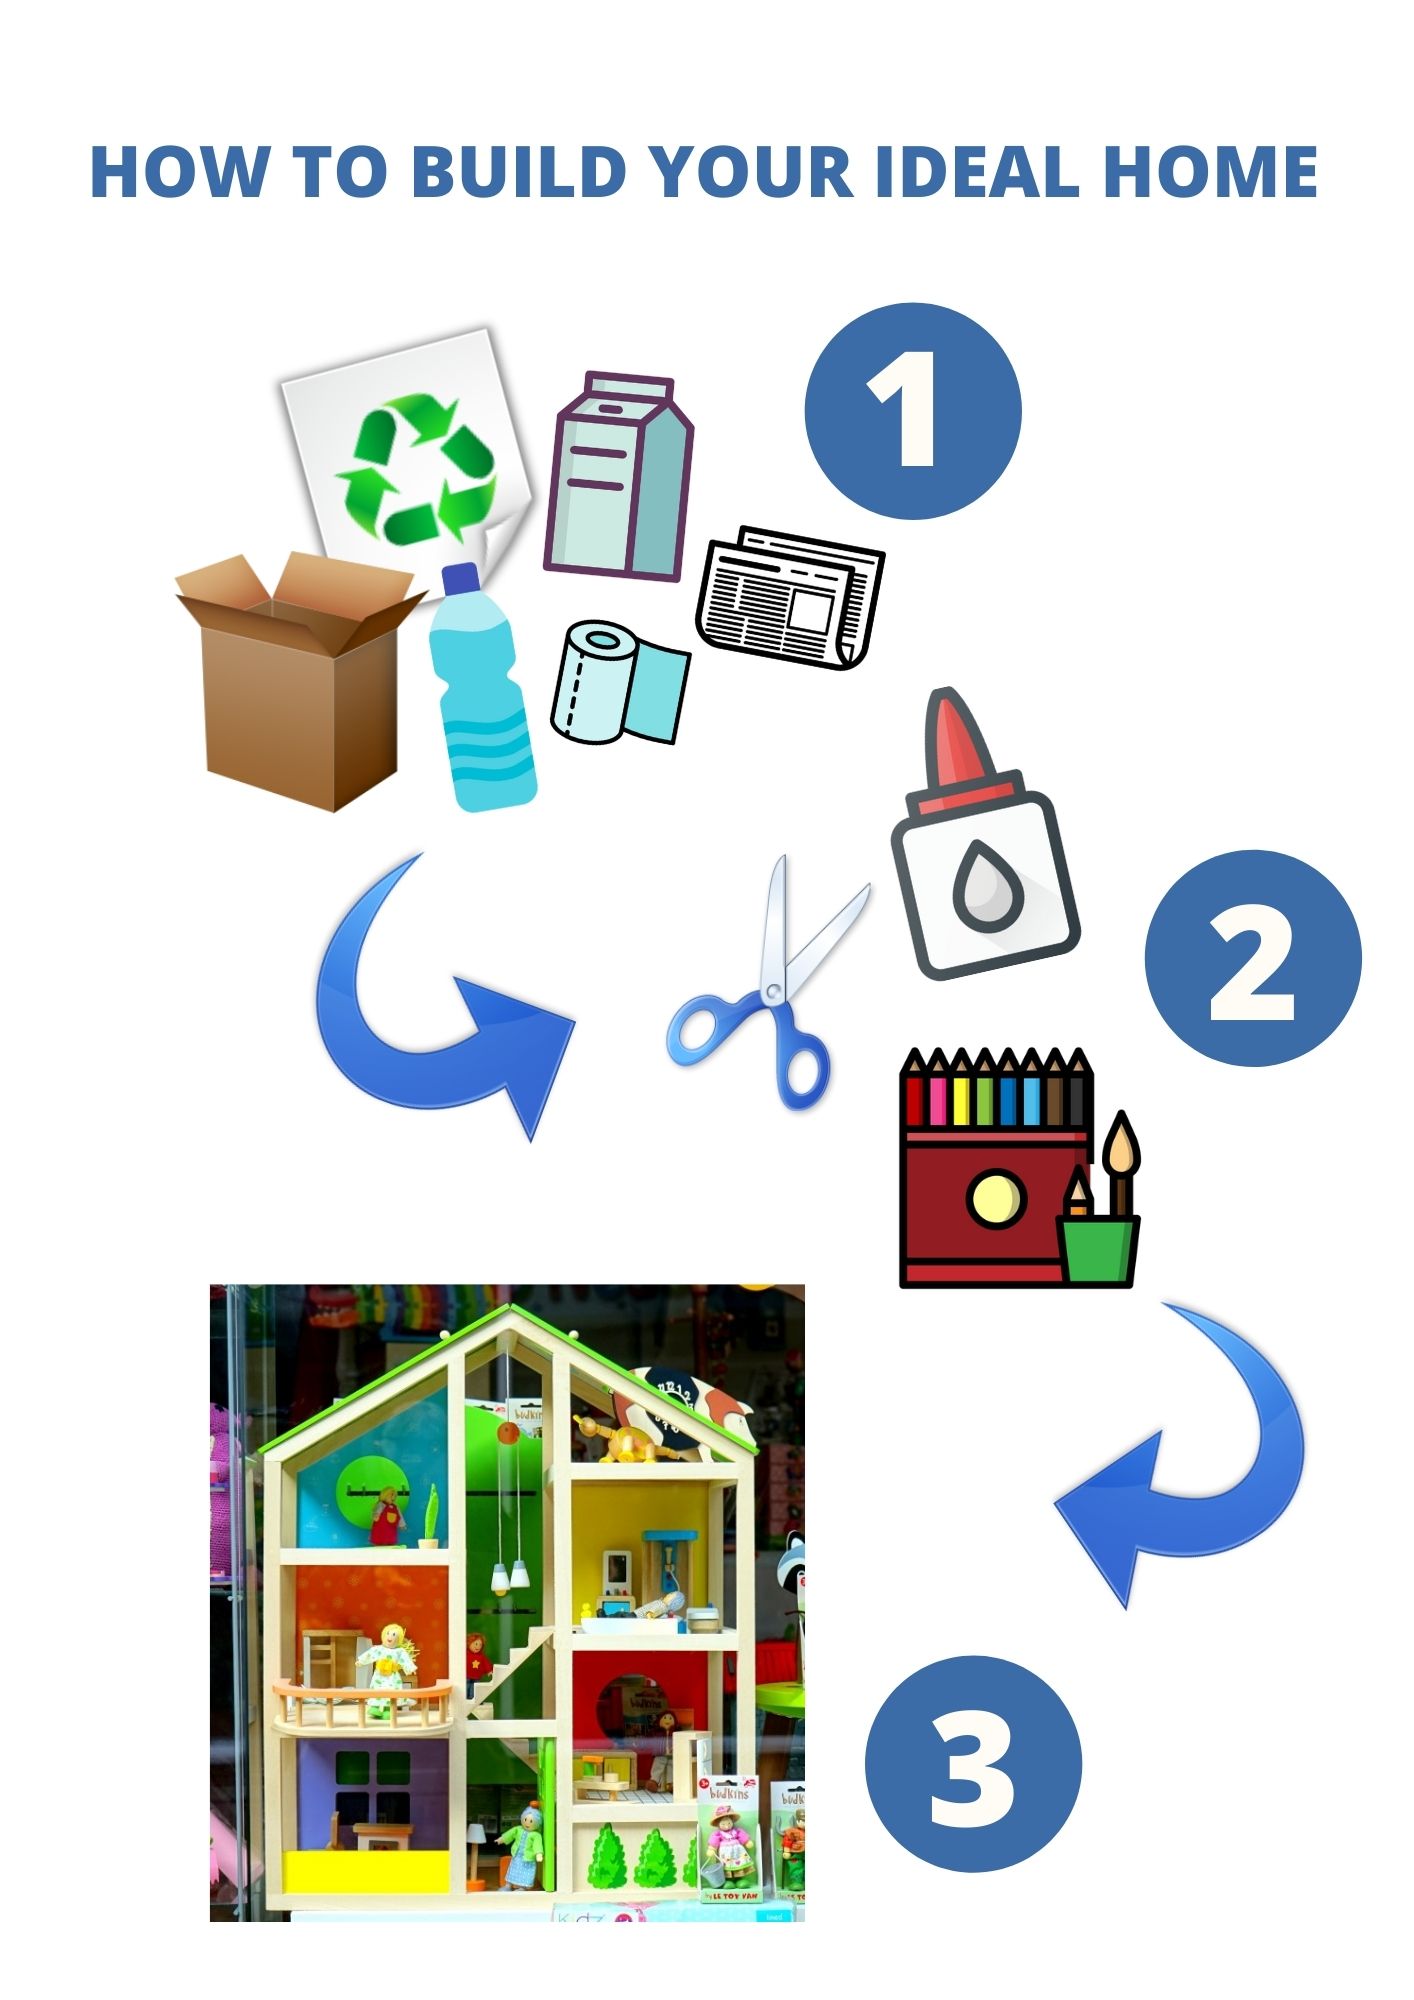 En la imagen puedes ver los tres pasos necesarios para realizar la maqueta: el primero con materiales reciclables, el segundo con unas tijeras, un pegamento y colores y el tercero con un ejemplo de maqueta de casa de muñecas